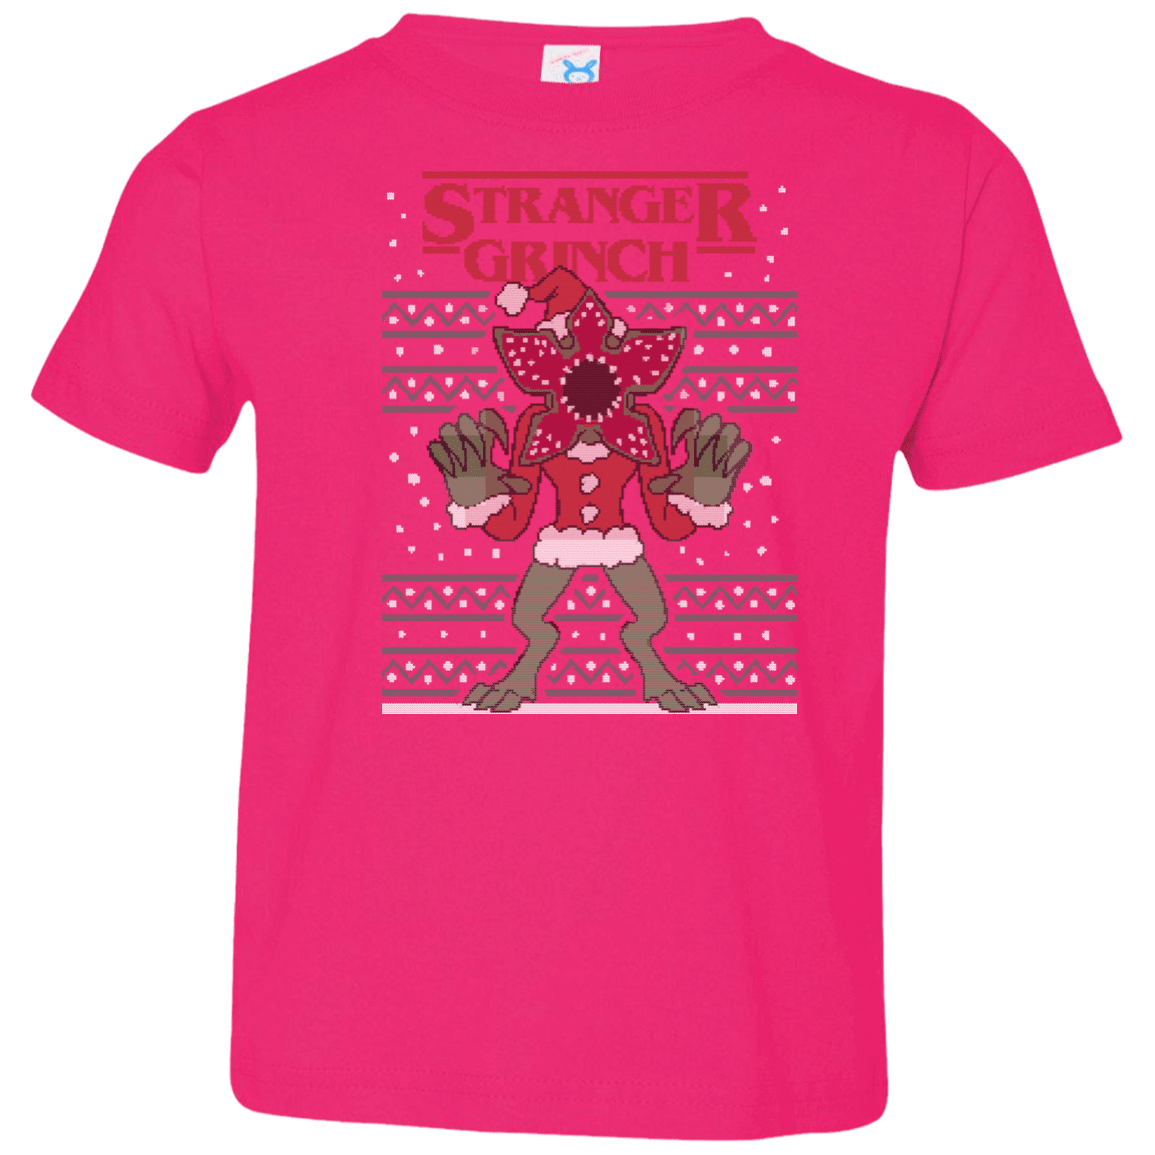 T-Shirts Hot Pink / 2T Stranger Grinch Toddler Premium T-Shirt